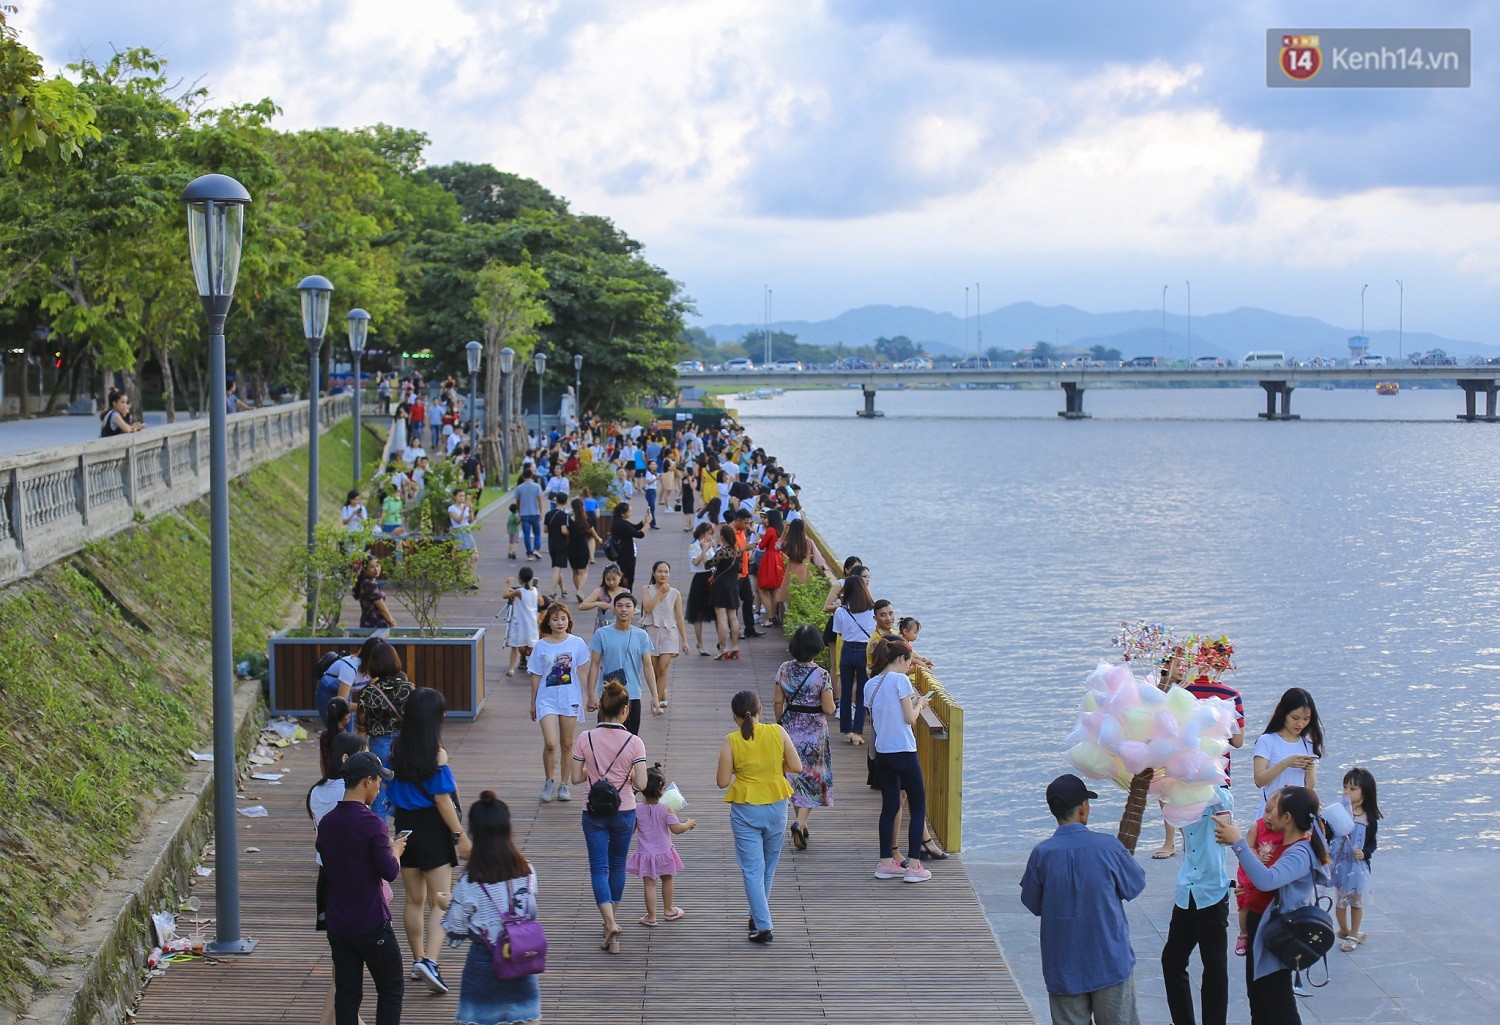 Cầu đi bộ lát gỗ lim 64 tỷ trên sông Hương trở thành địa điểm hot nhất ở Huế dù chưa khánh thành - Ảnh 14.